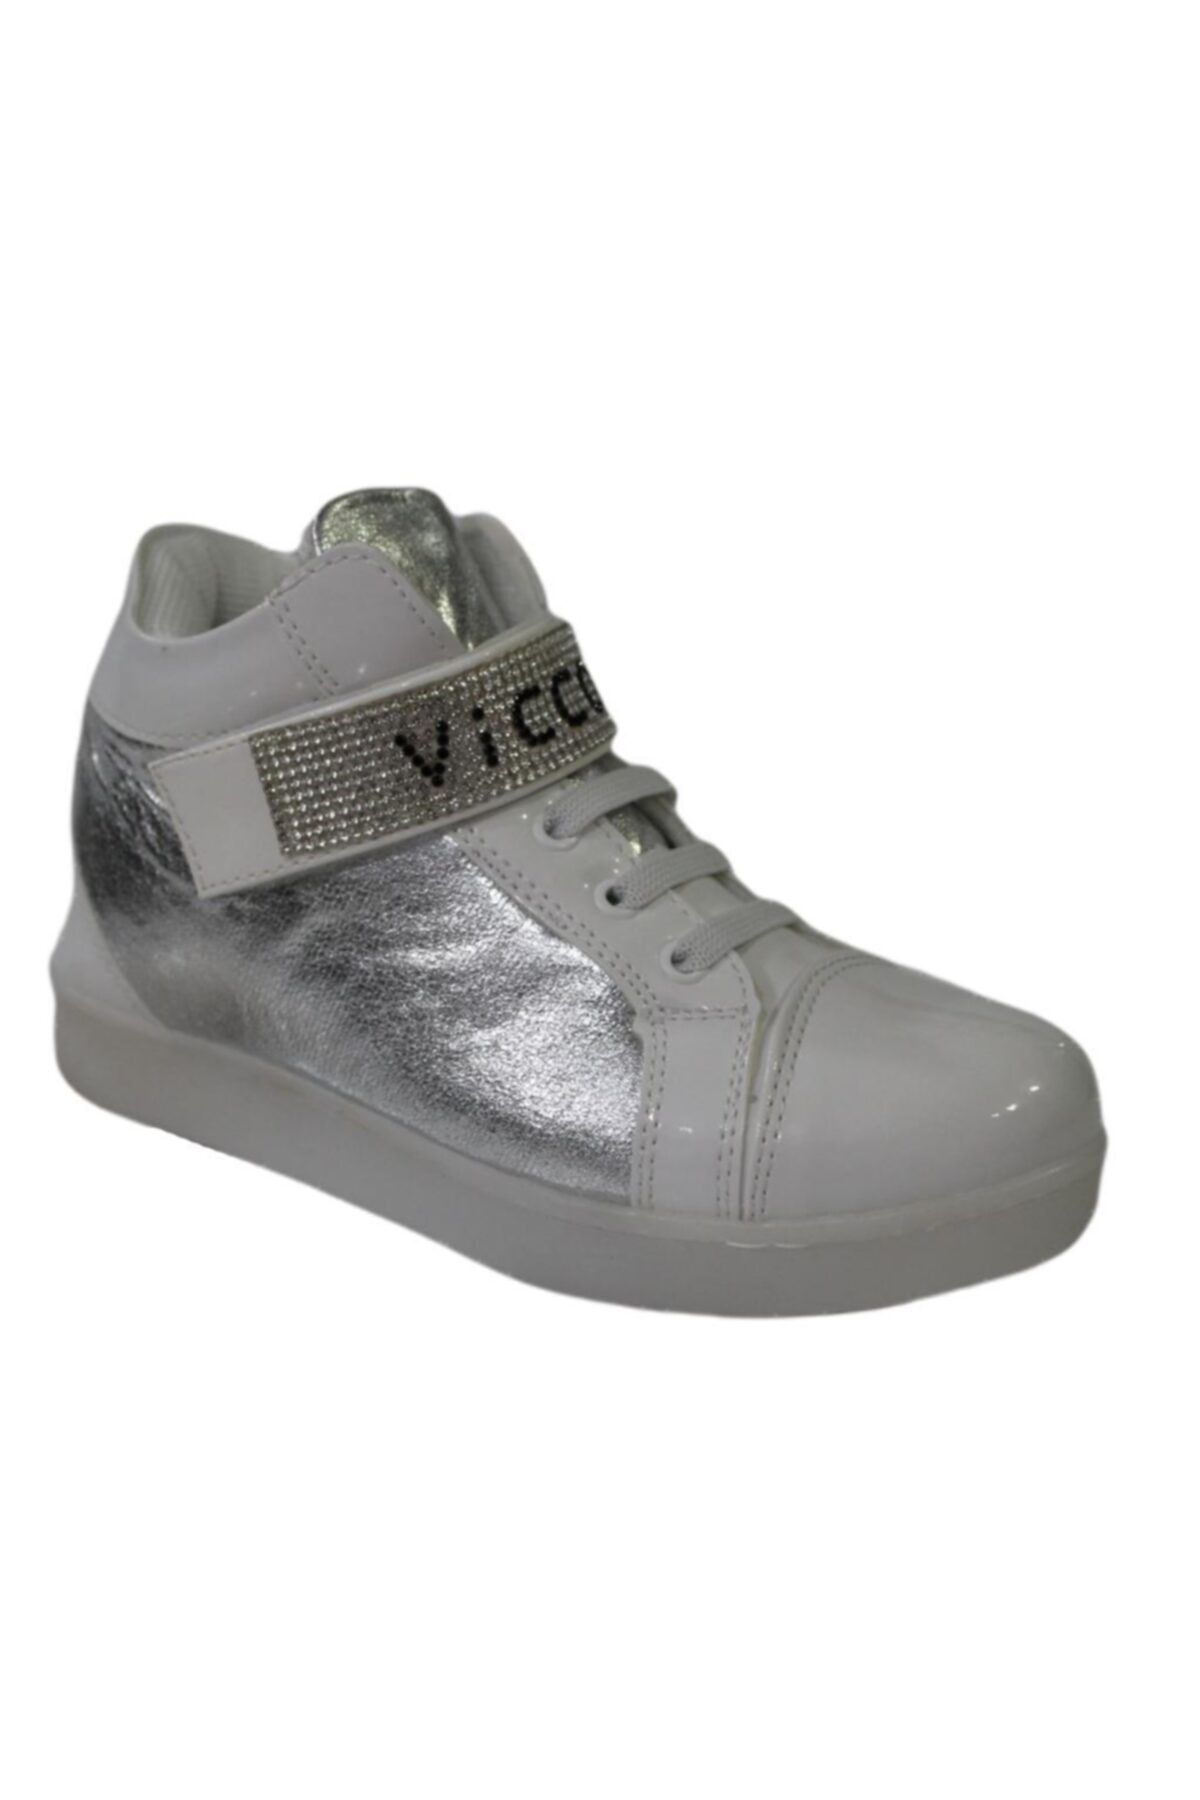 Vicco 955.t.537 Çocuk (31-35) Kışlık Ayakkabı Bot